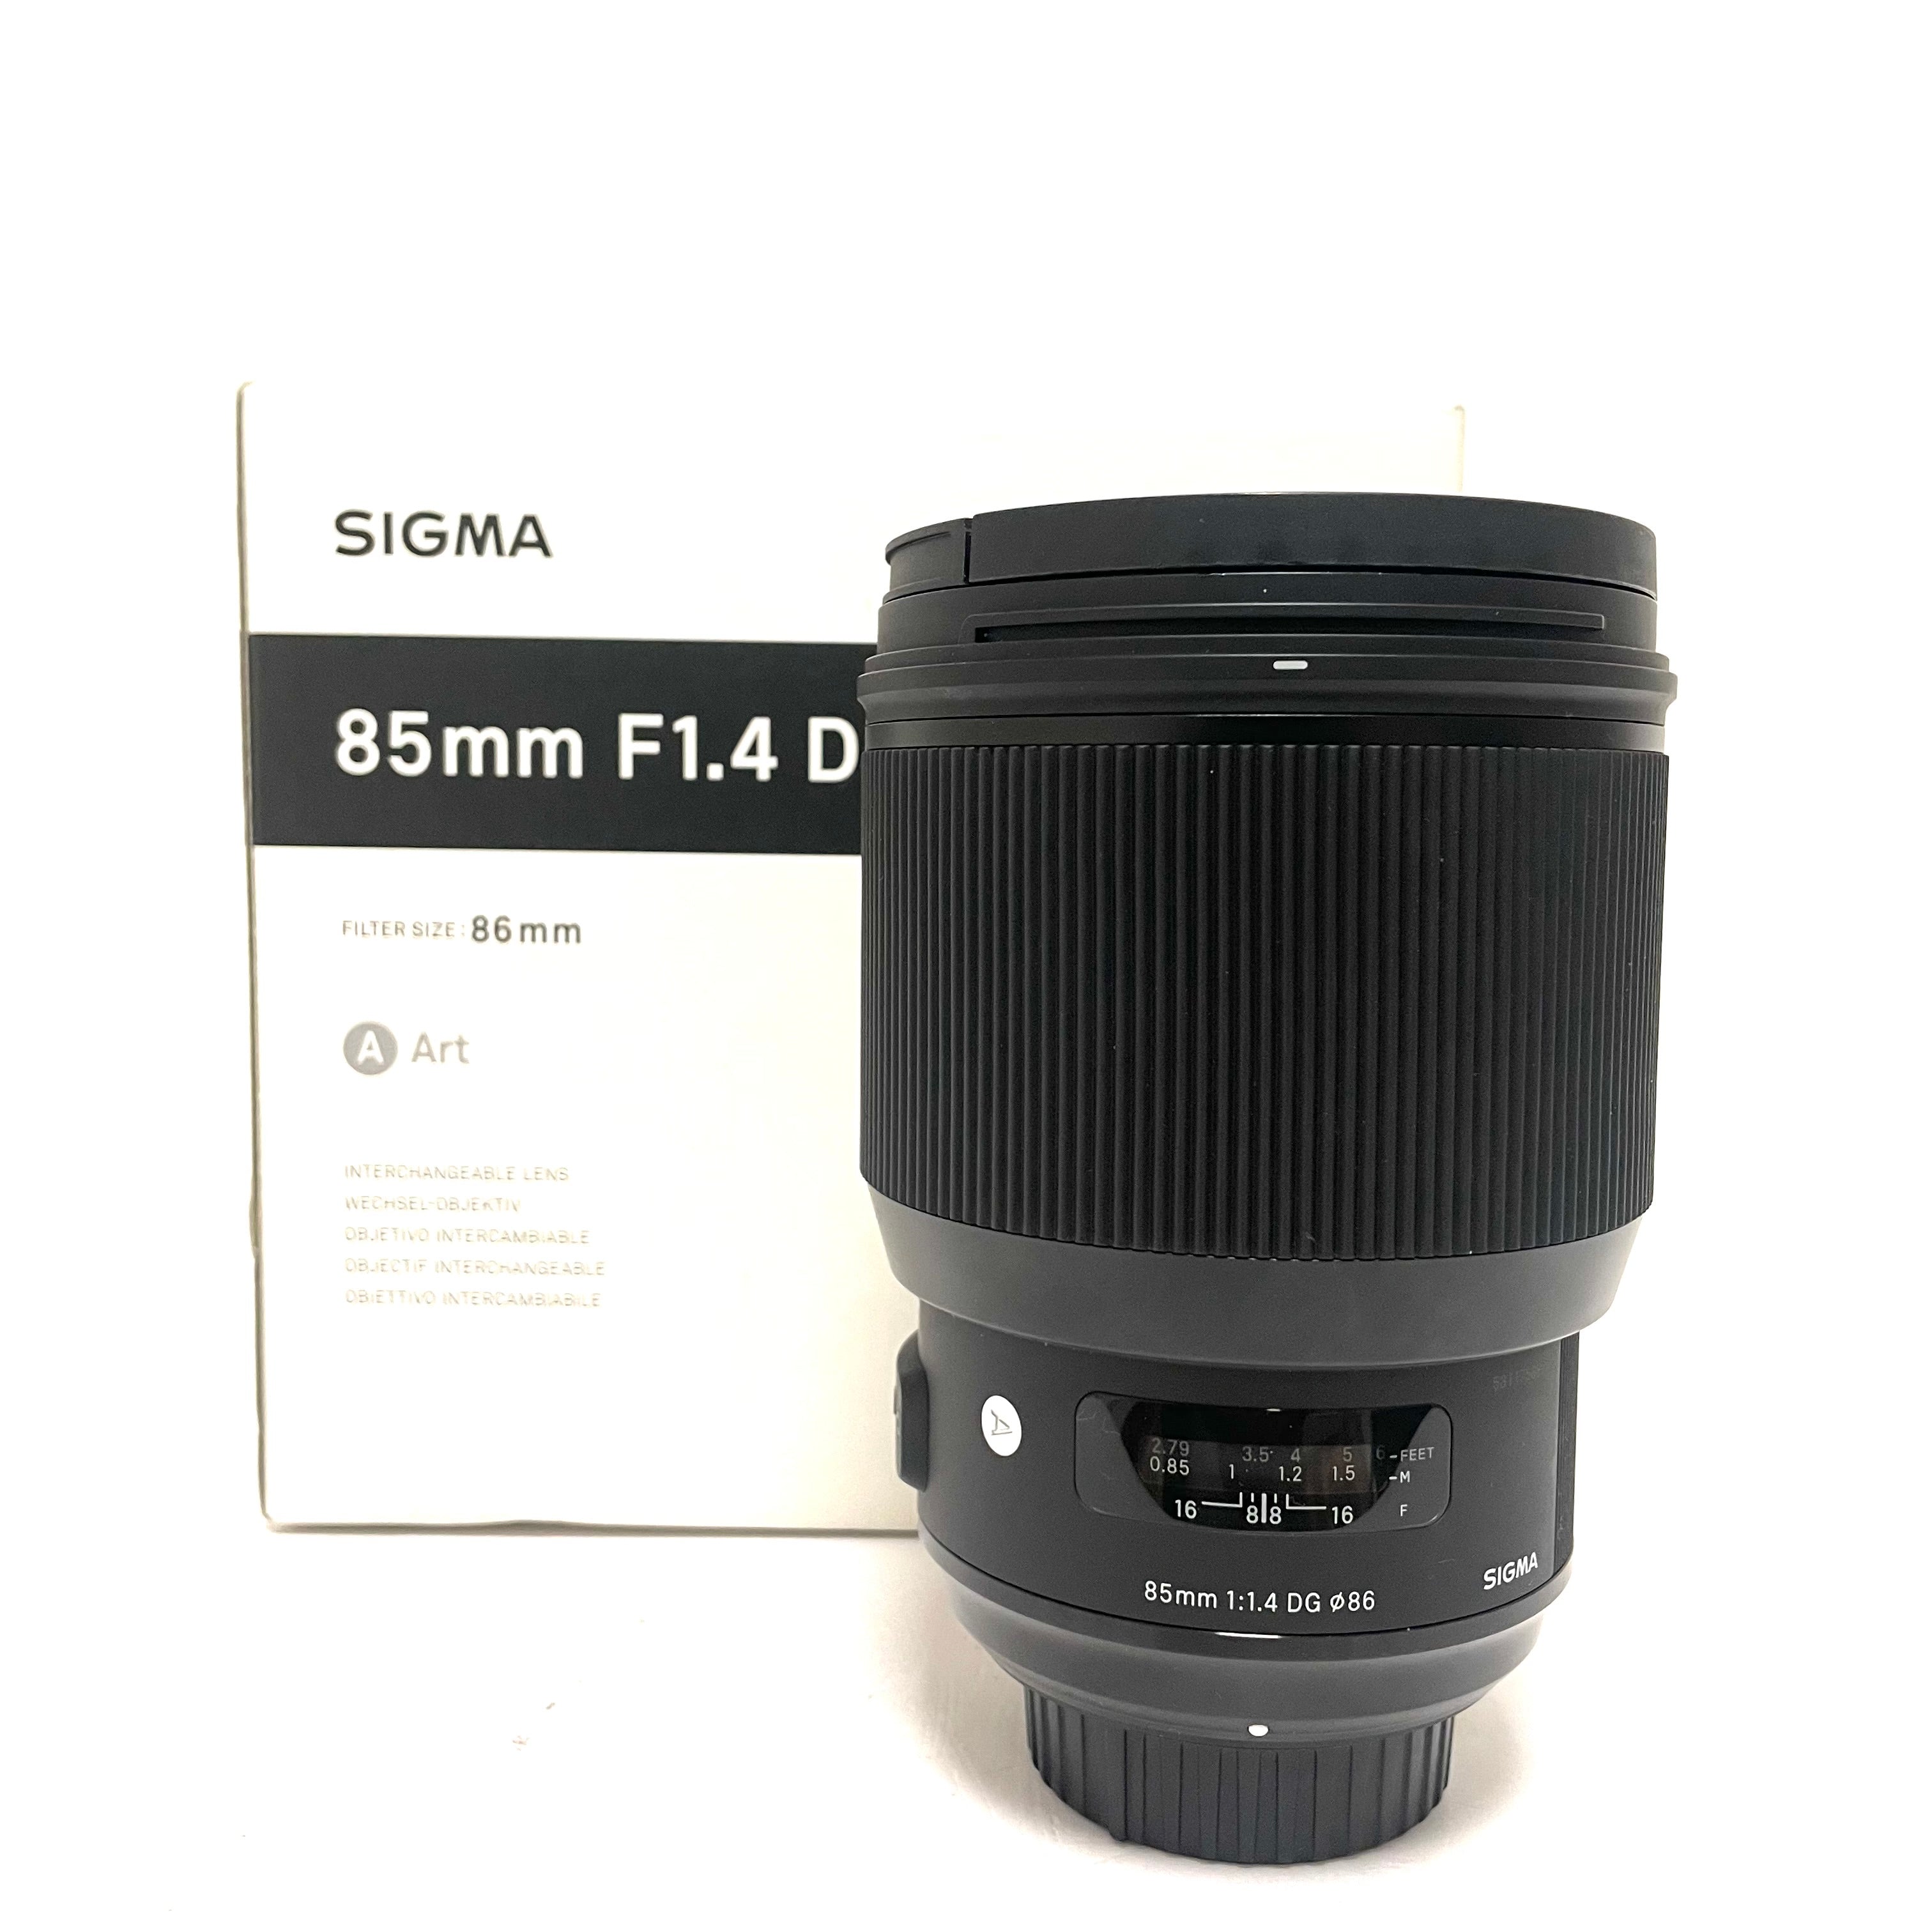 Sigma 85mm F/1.4 DG ART usato per Nikon